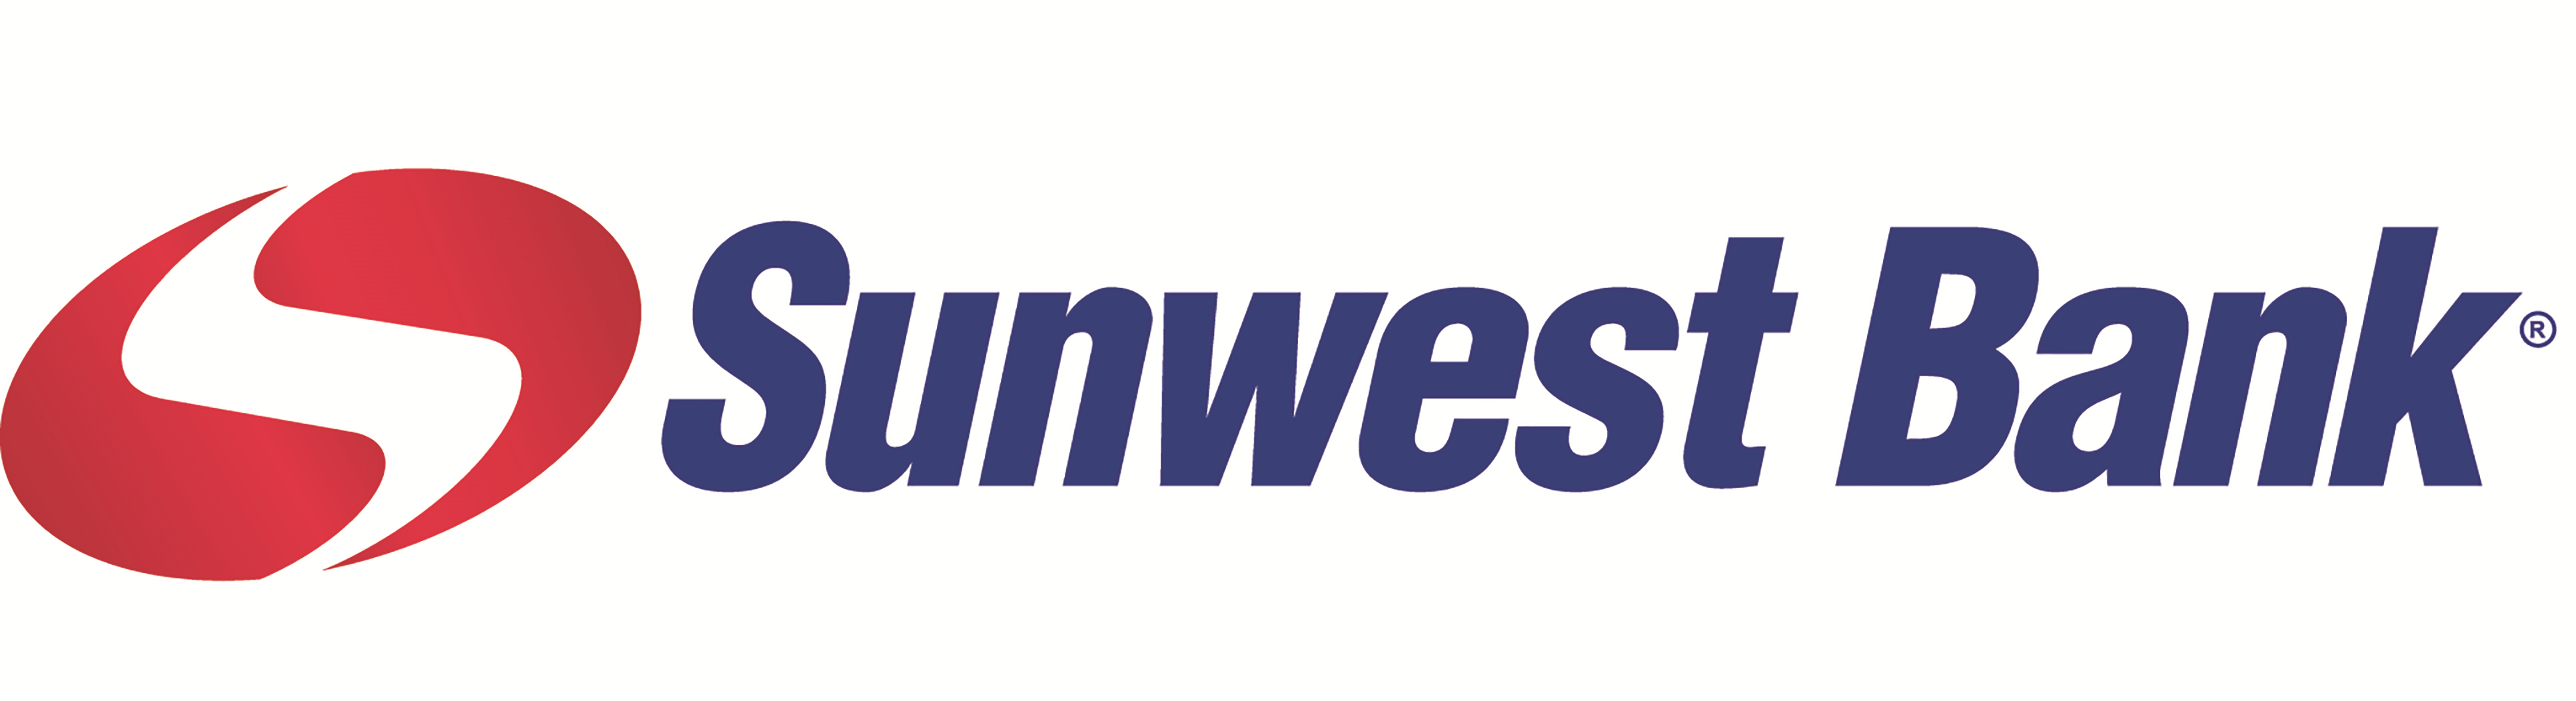 Sunwest Bank Company Logo